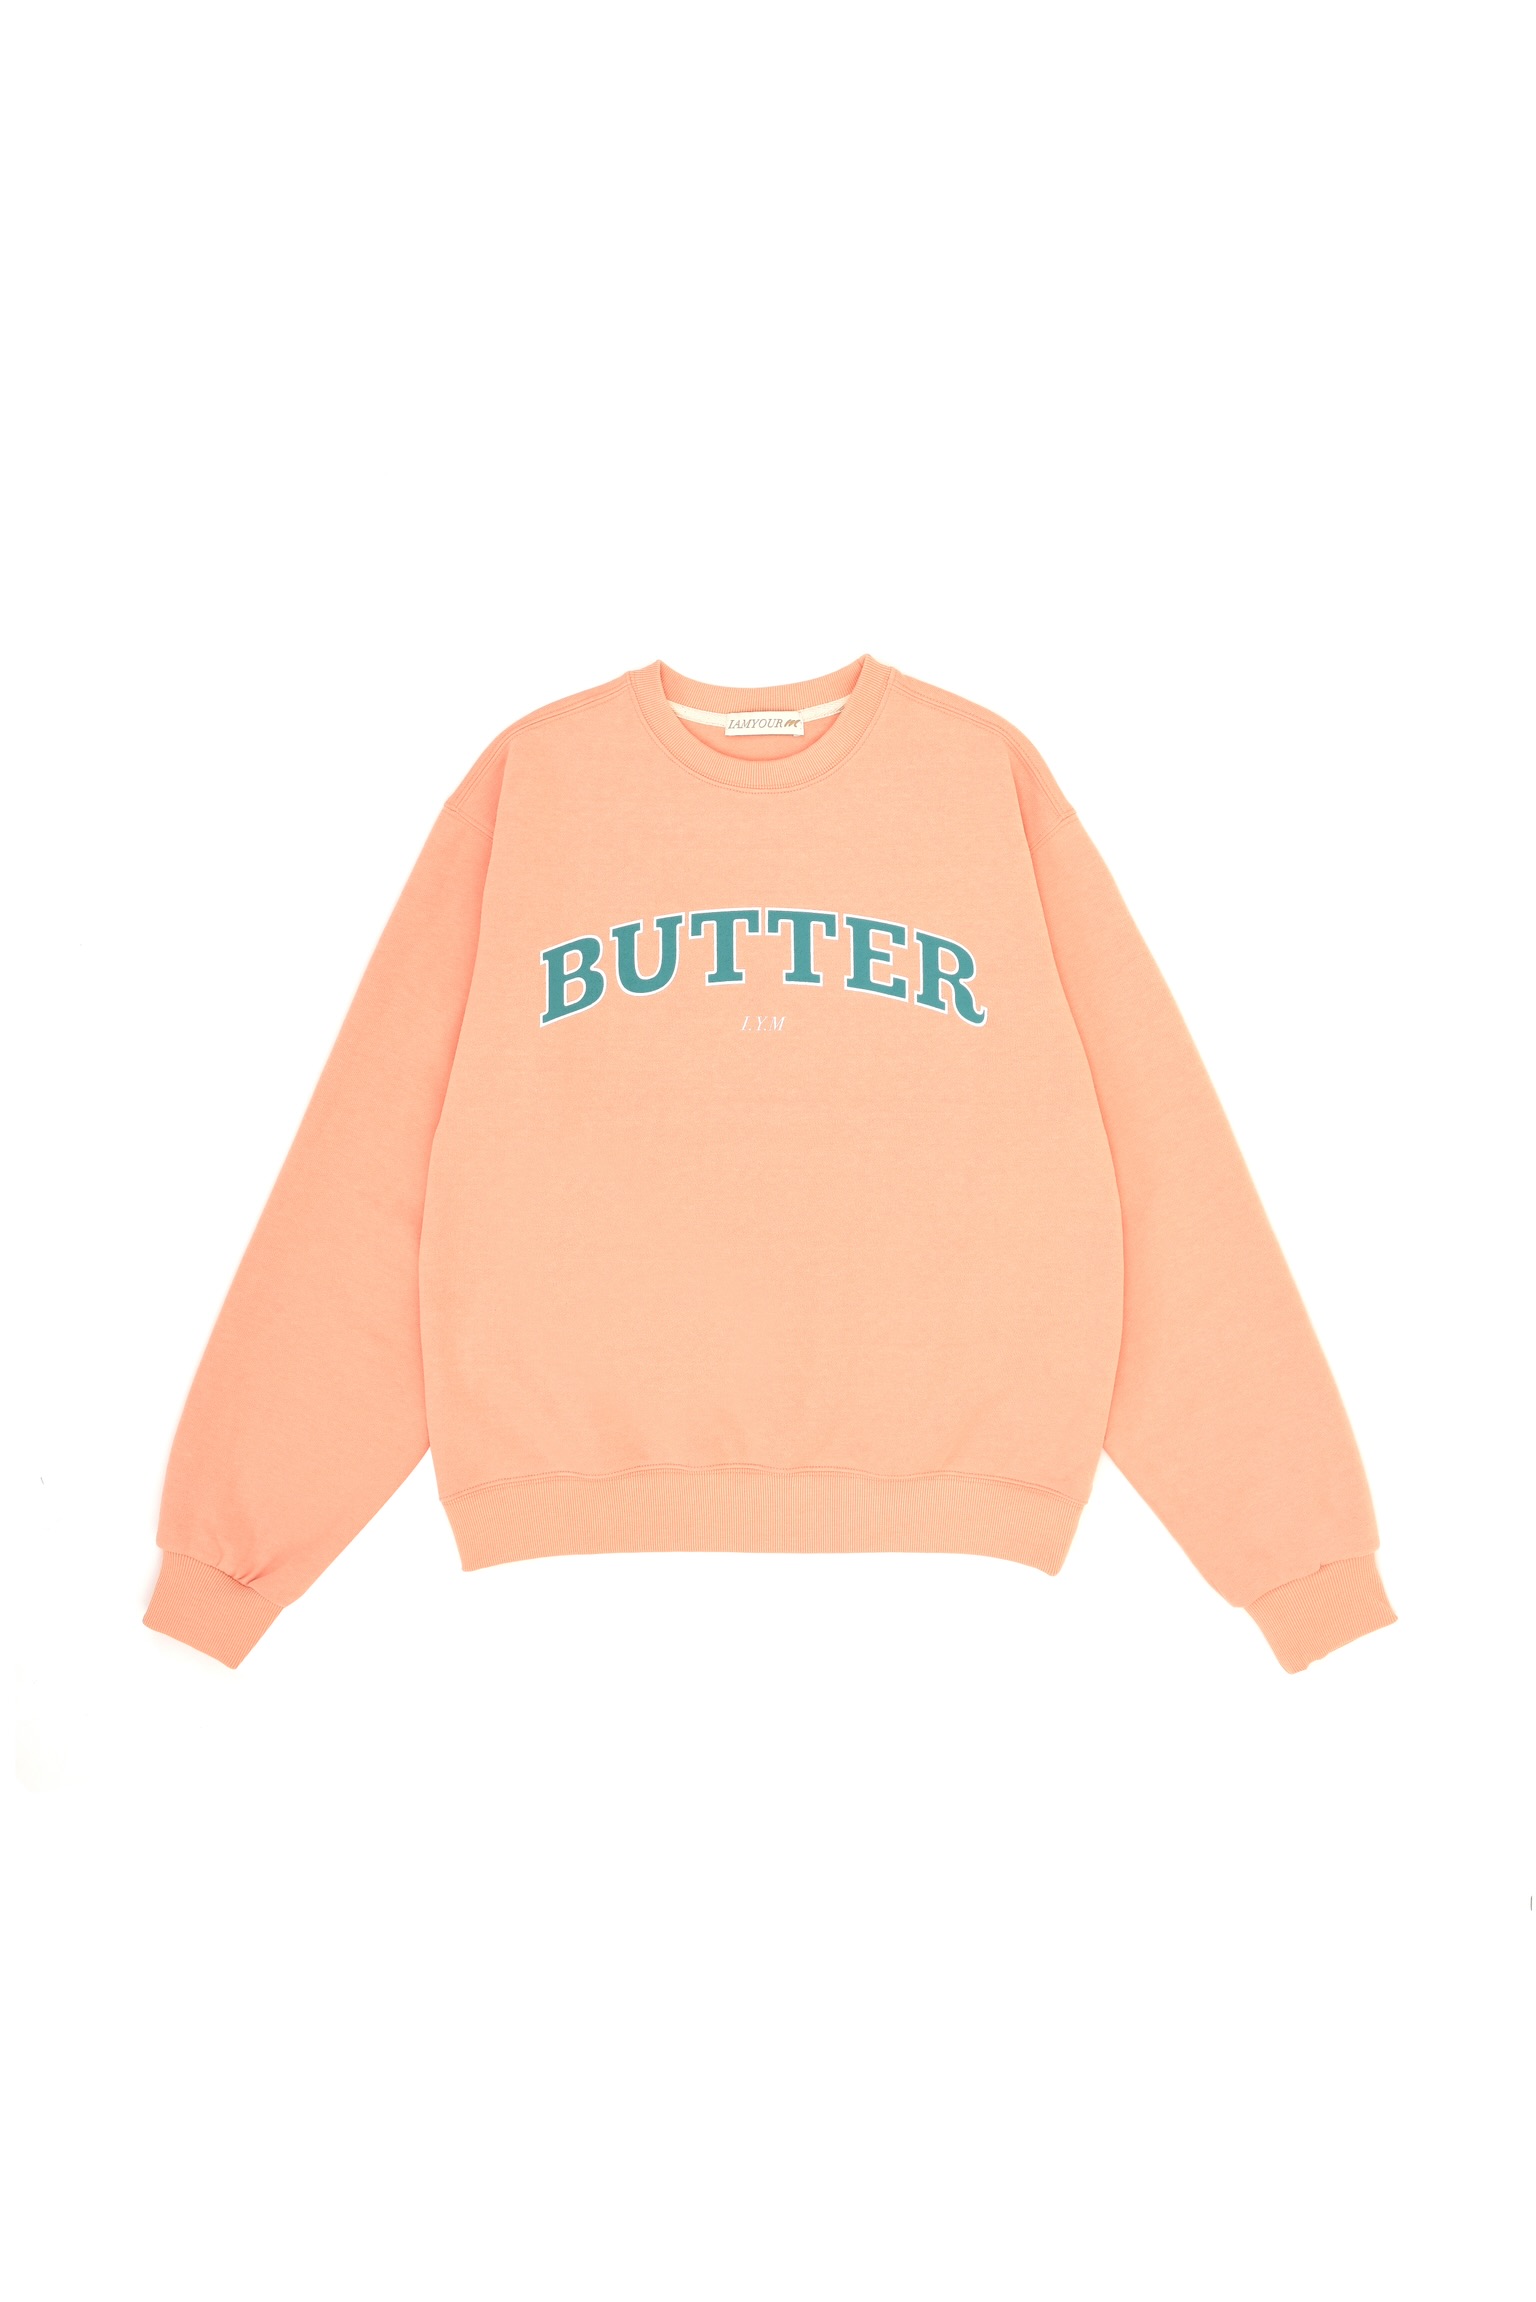 30%--Butter Sweatshirts (orange)